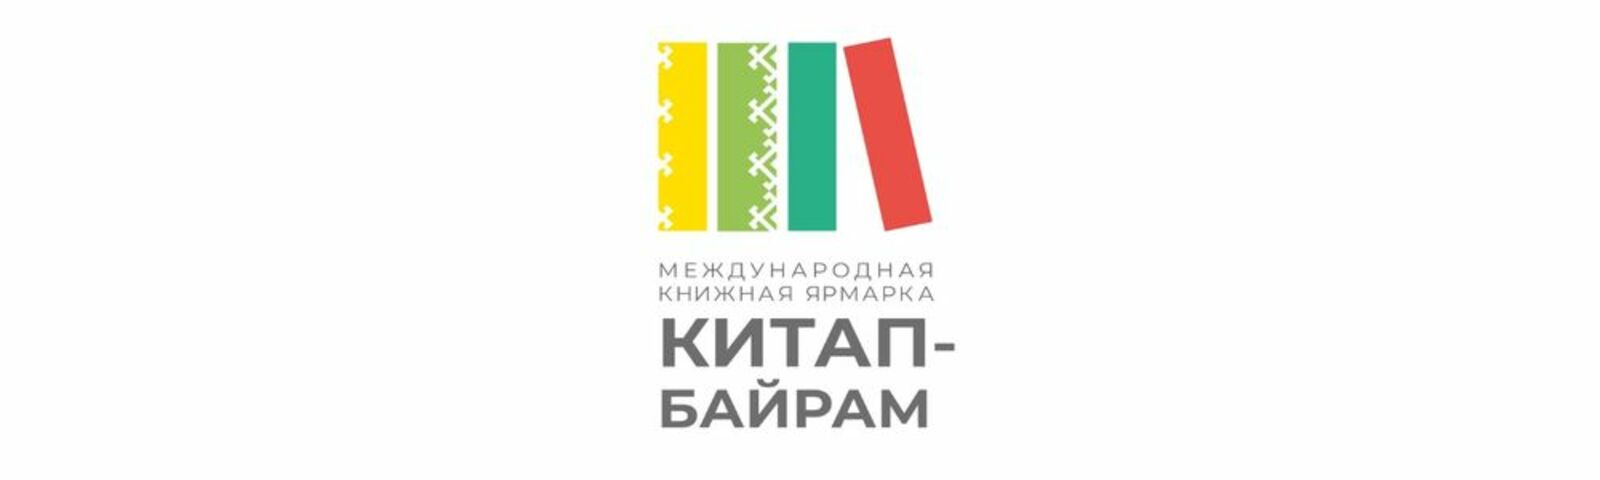 Башкирия готовится к книжной ярмарке «Китап-байрам»